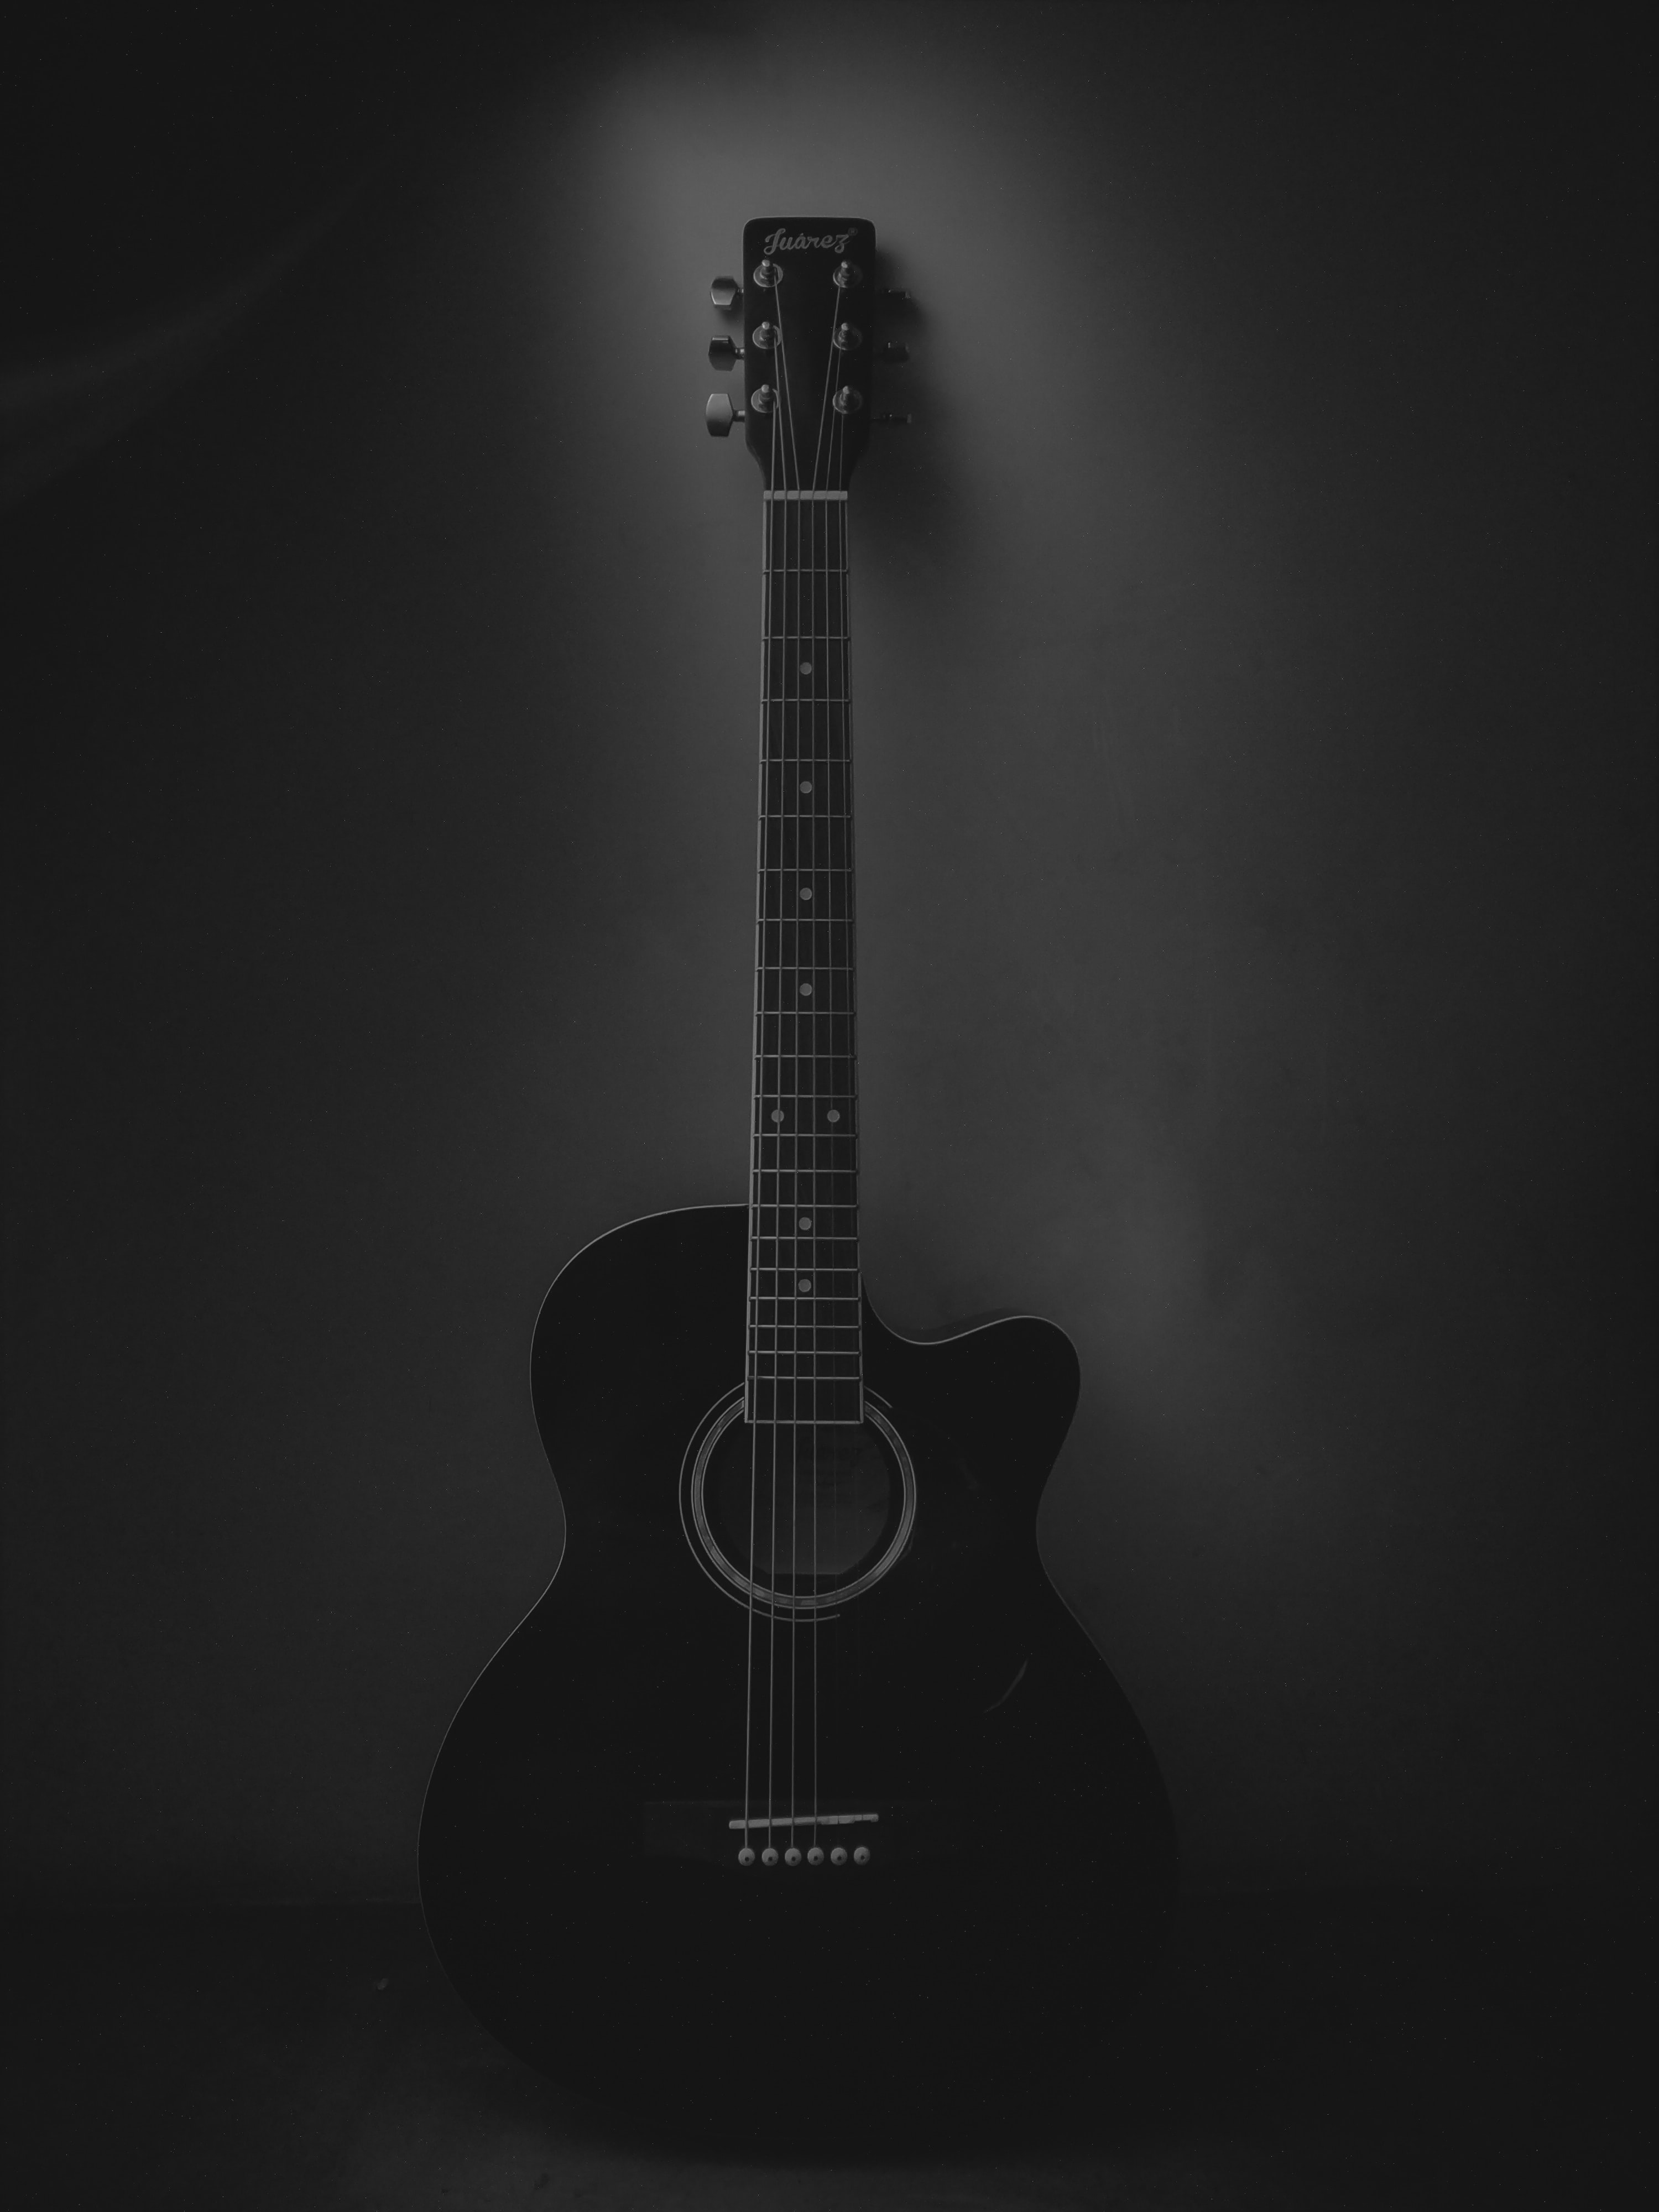 dark, guitar, black, music, acoustic guitar, musical instrument iphone wallpaper